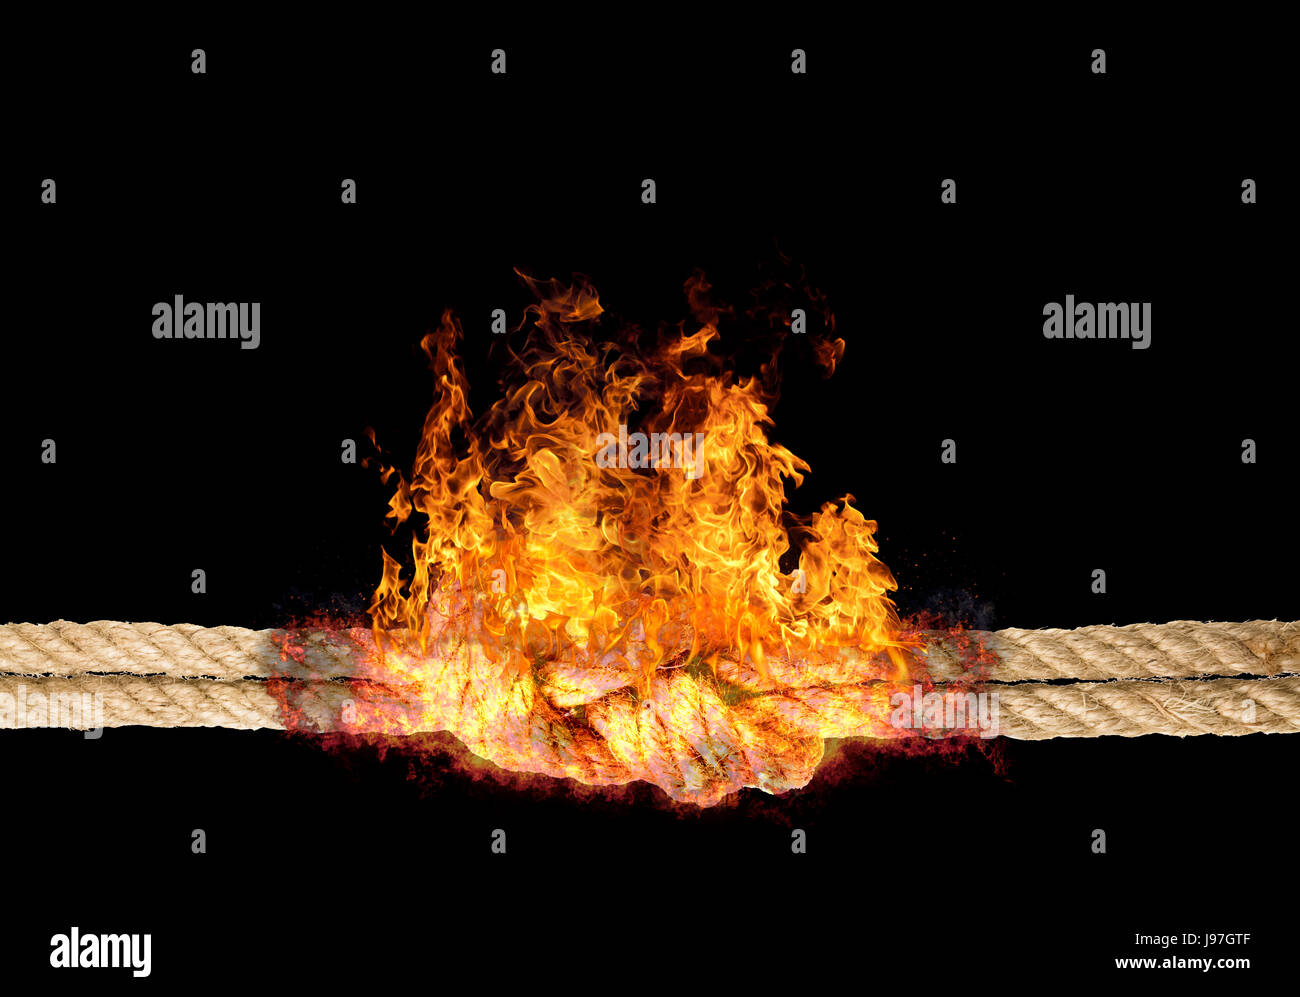 Corde solide avec un noeud, bursted dans des flammes, isolé contre l'arrière-plan de couleur noire Banque D'Images